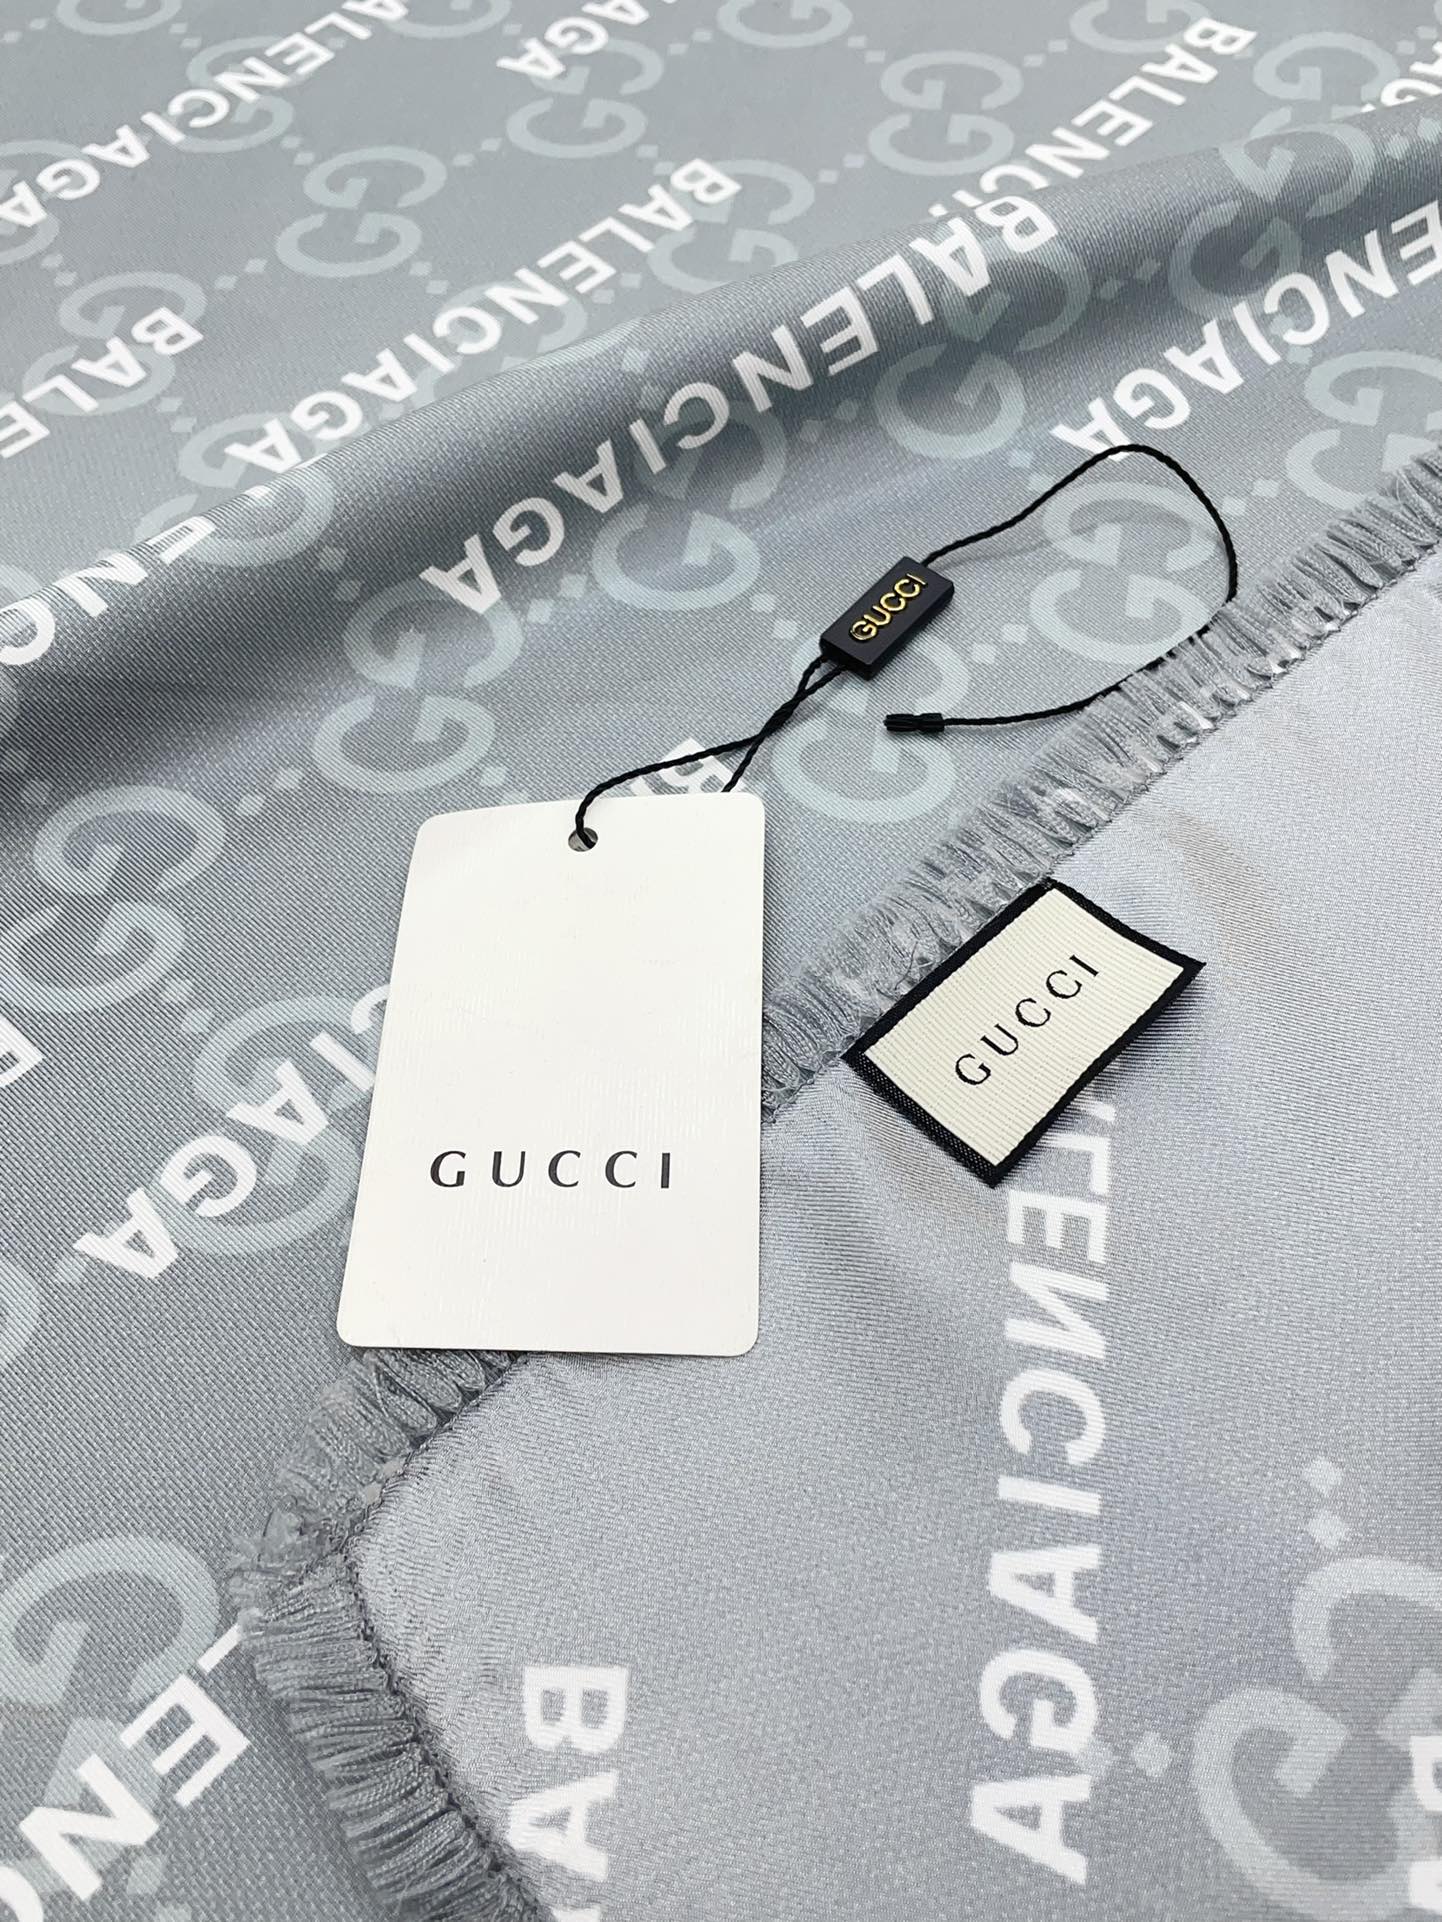 上新90真丝斜纹Gucci推出TheHackerProject系列探索时尚界对于原创与挪用的概念亚力山卓